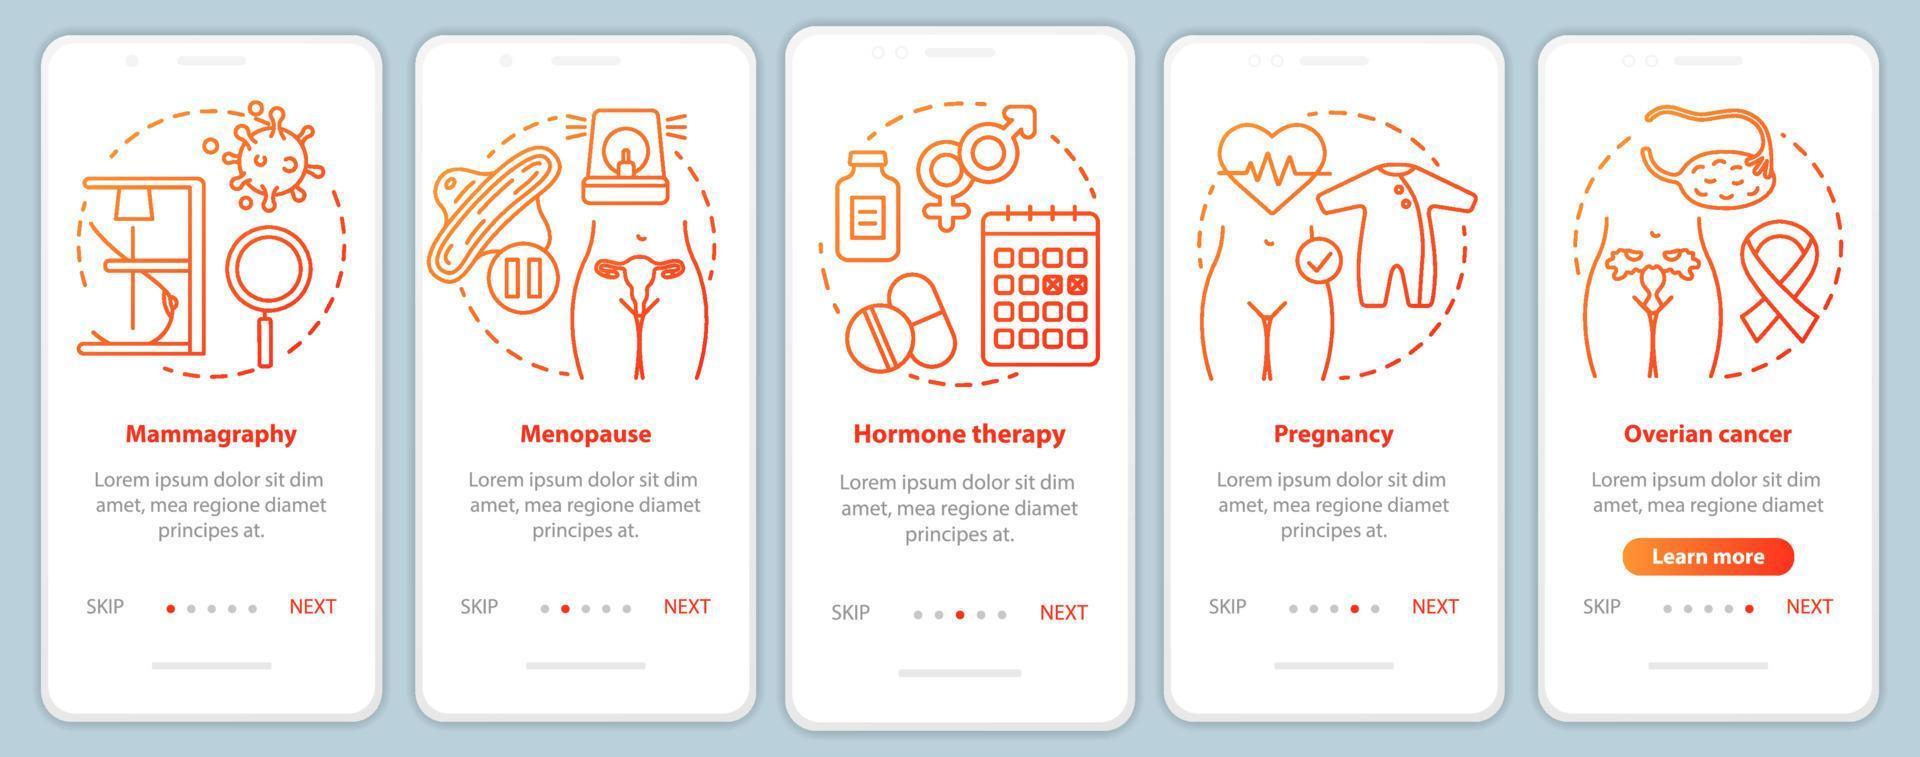 kvinnor sjukvård röd onboarding mobil app sida skärm vektor mall. graviditet, äggstockscancer, klimakteriet. genomgång av webbplatssteg med linjära ikoner. ux, ui, gui smartphone gränssnitt koncept